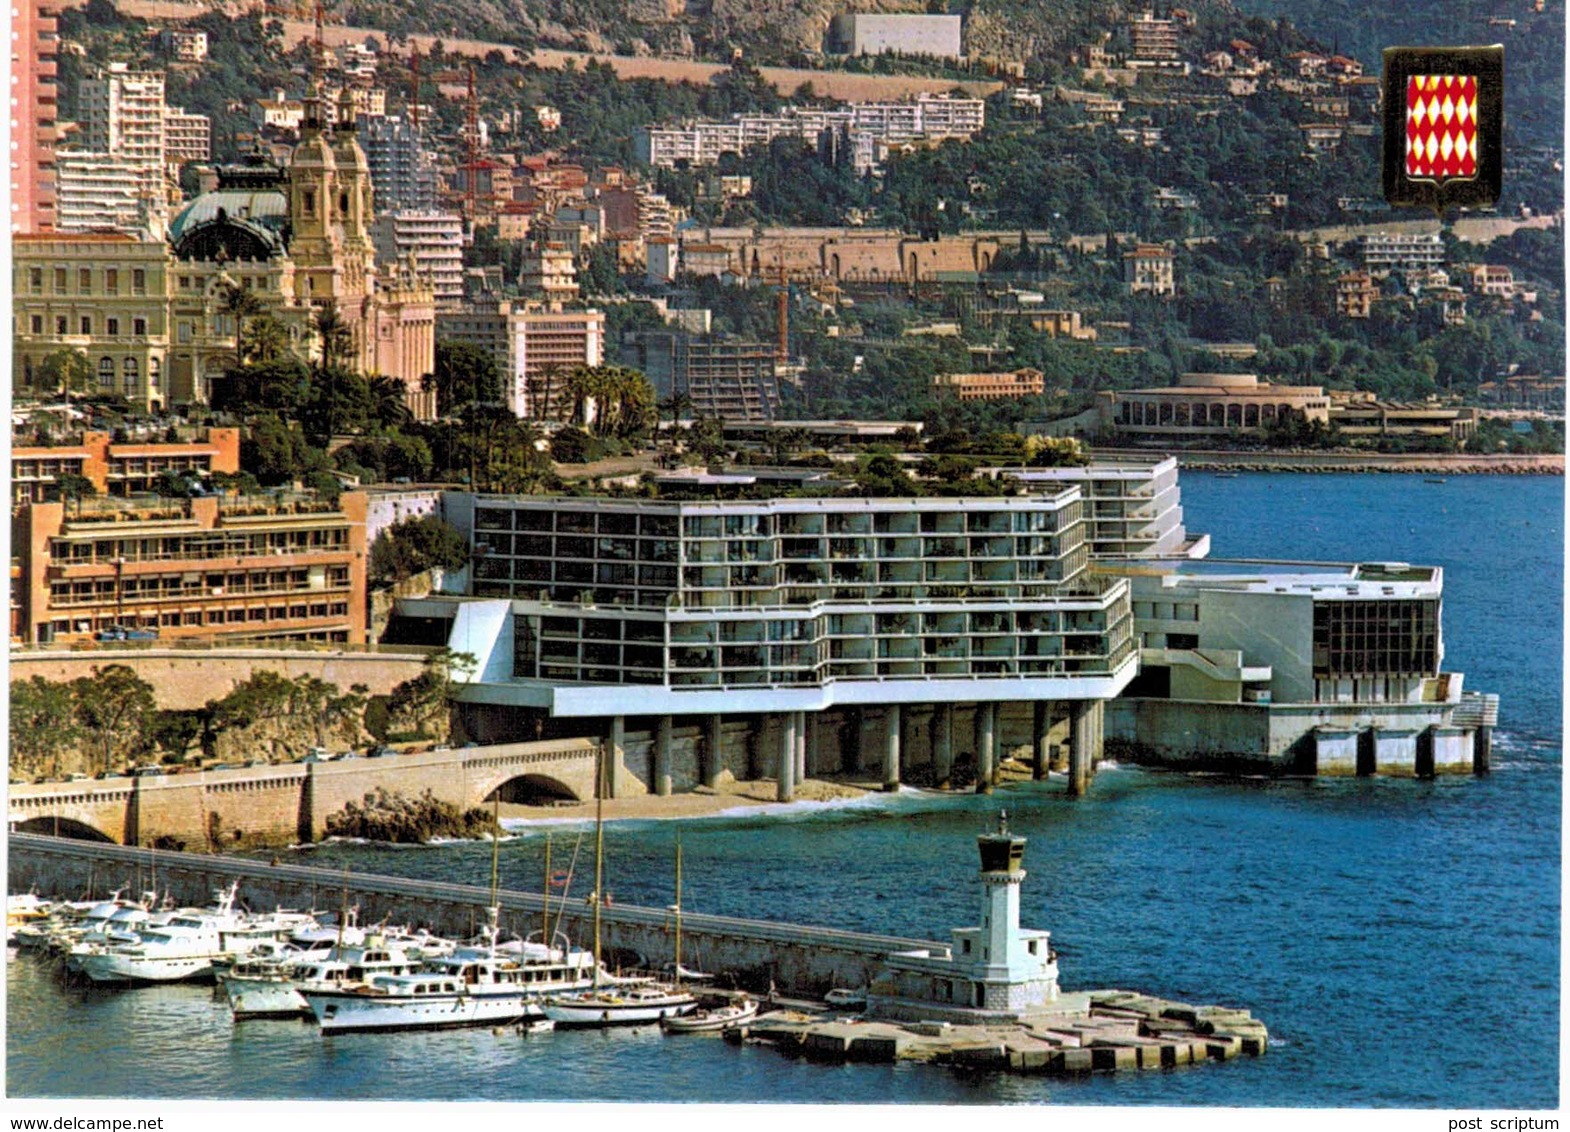 Lot 133 -  Monaco Monte Carlo - 120 cartes